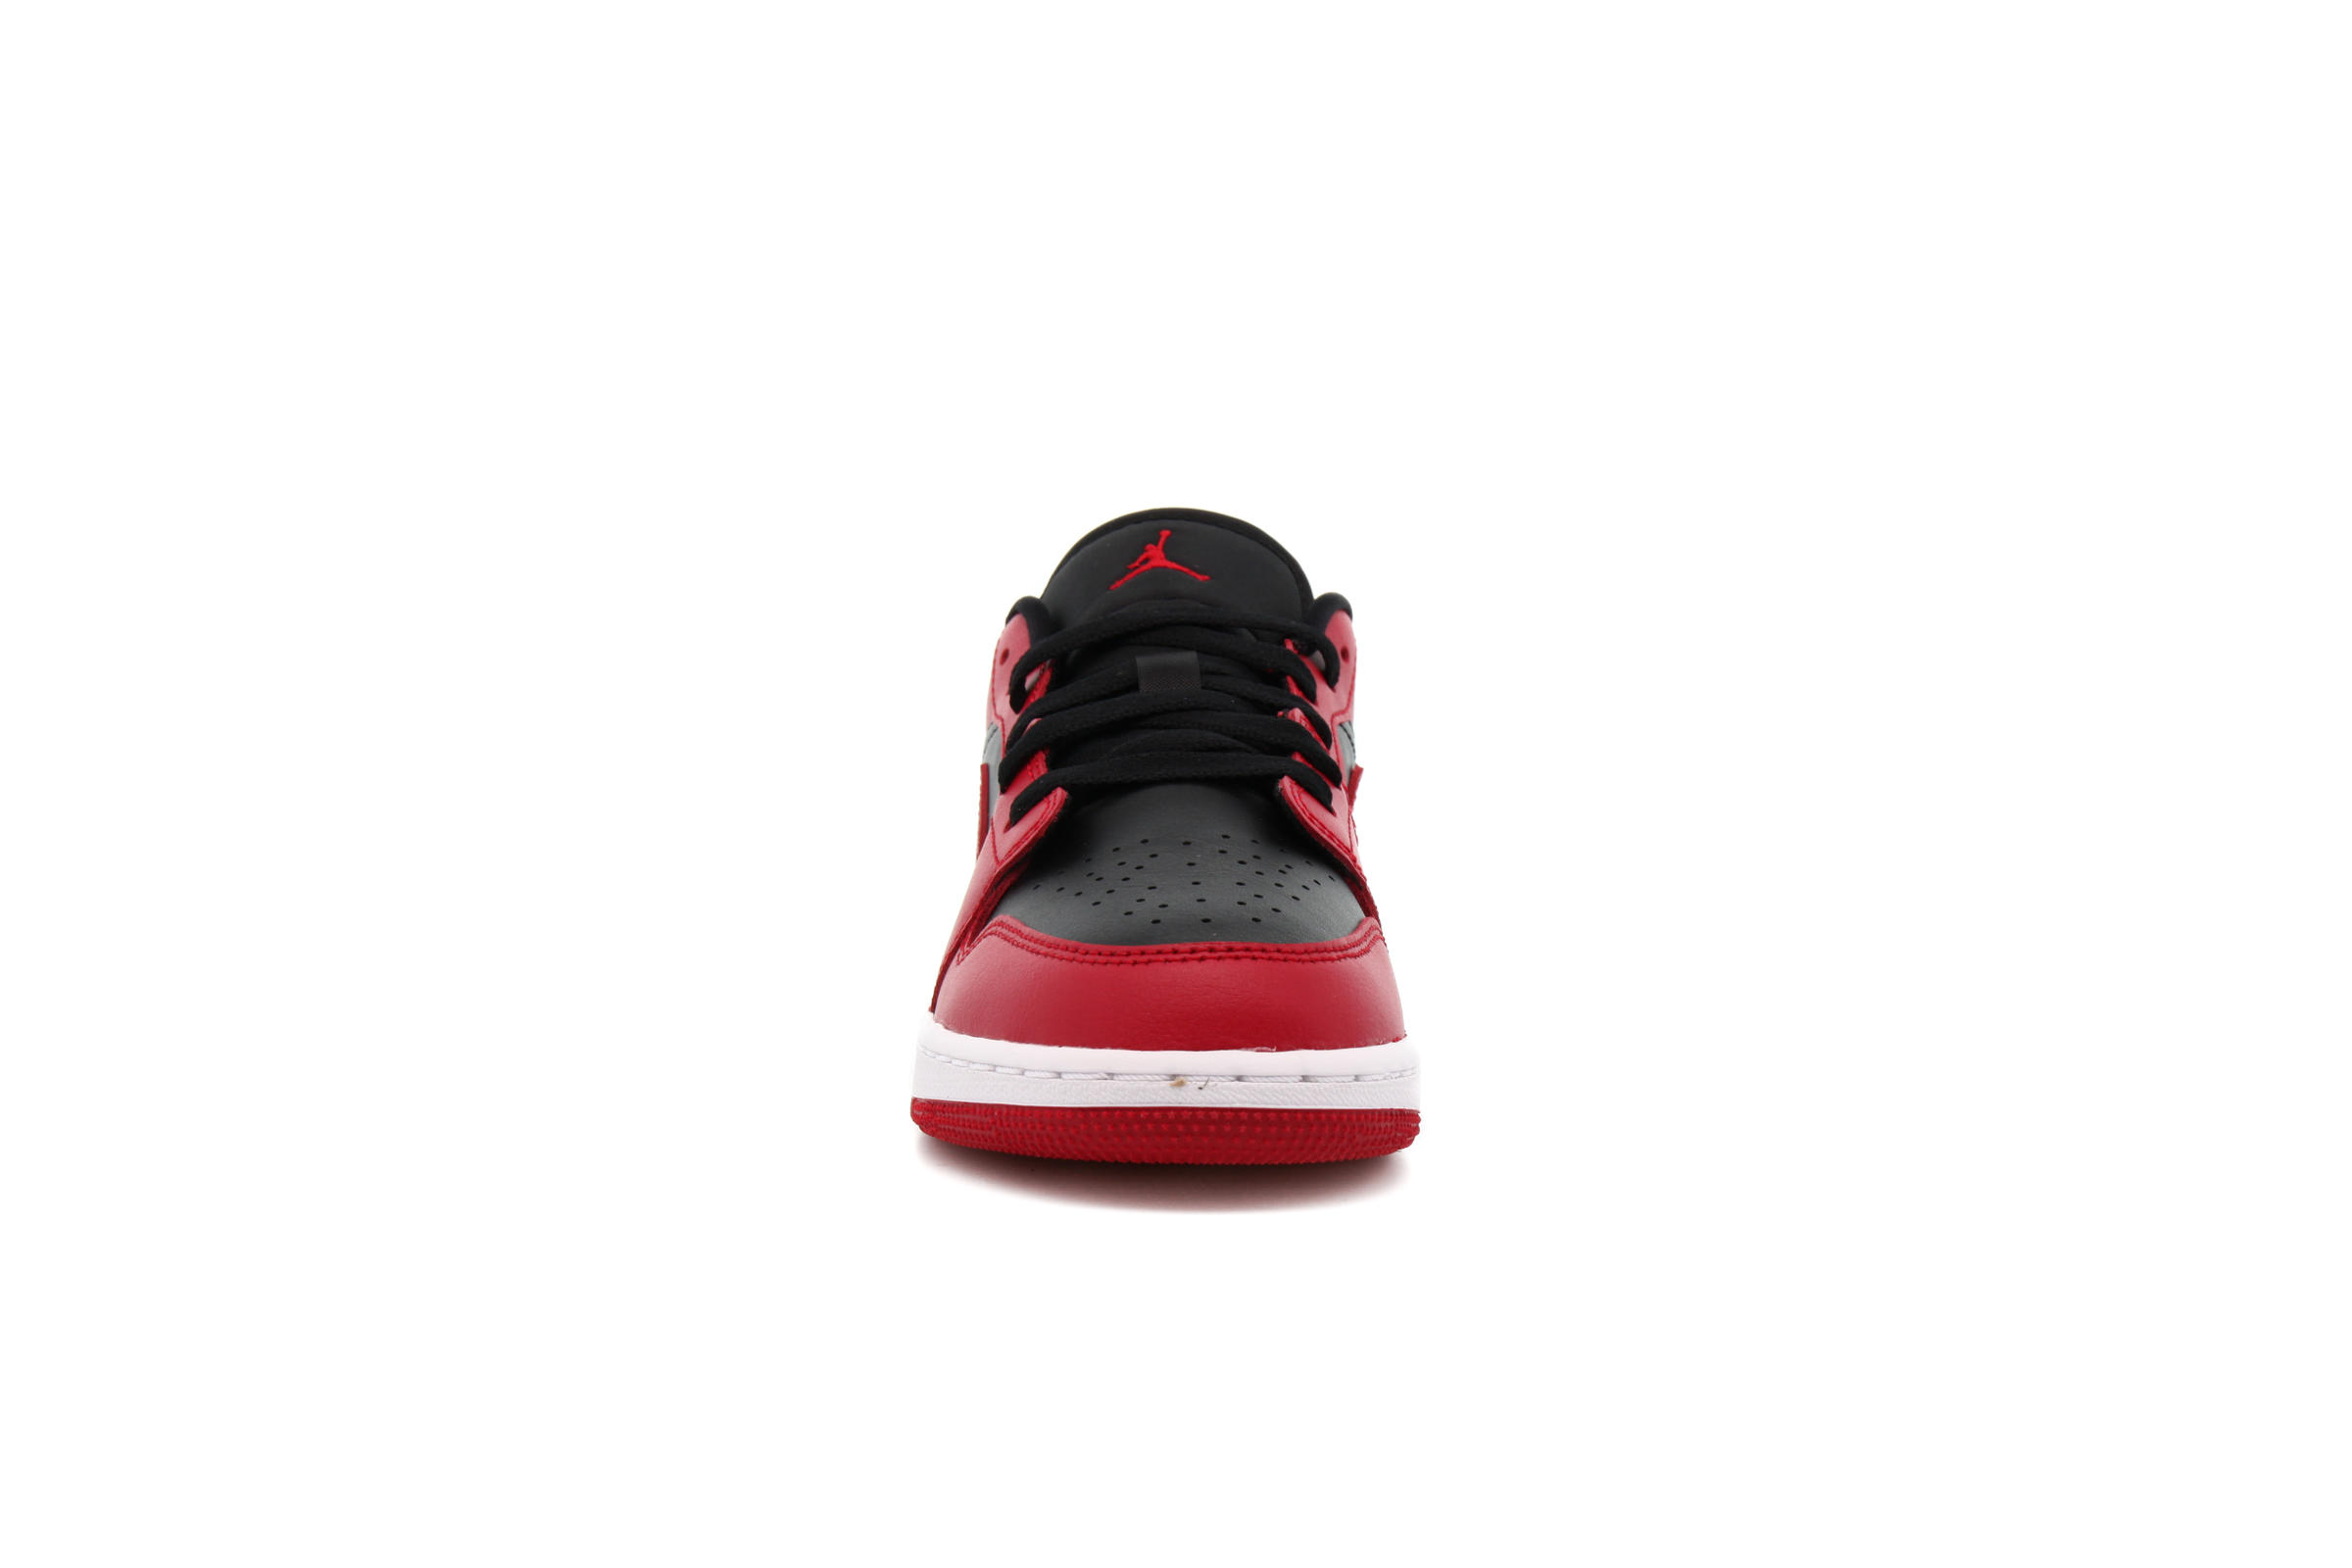 Air Jordan 1 LOW (GS) "GYM RED"